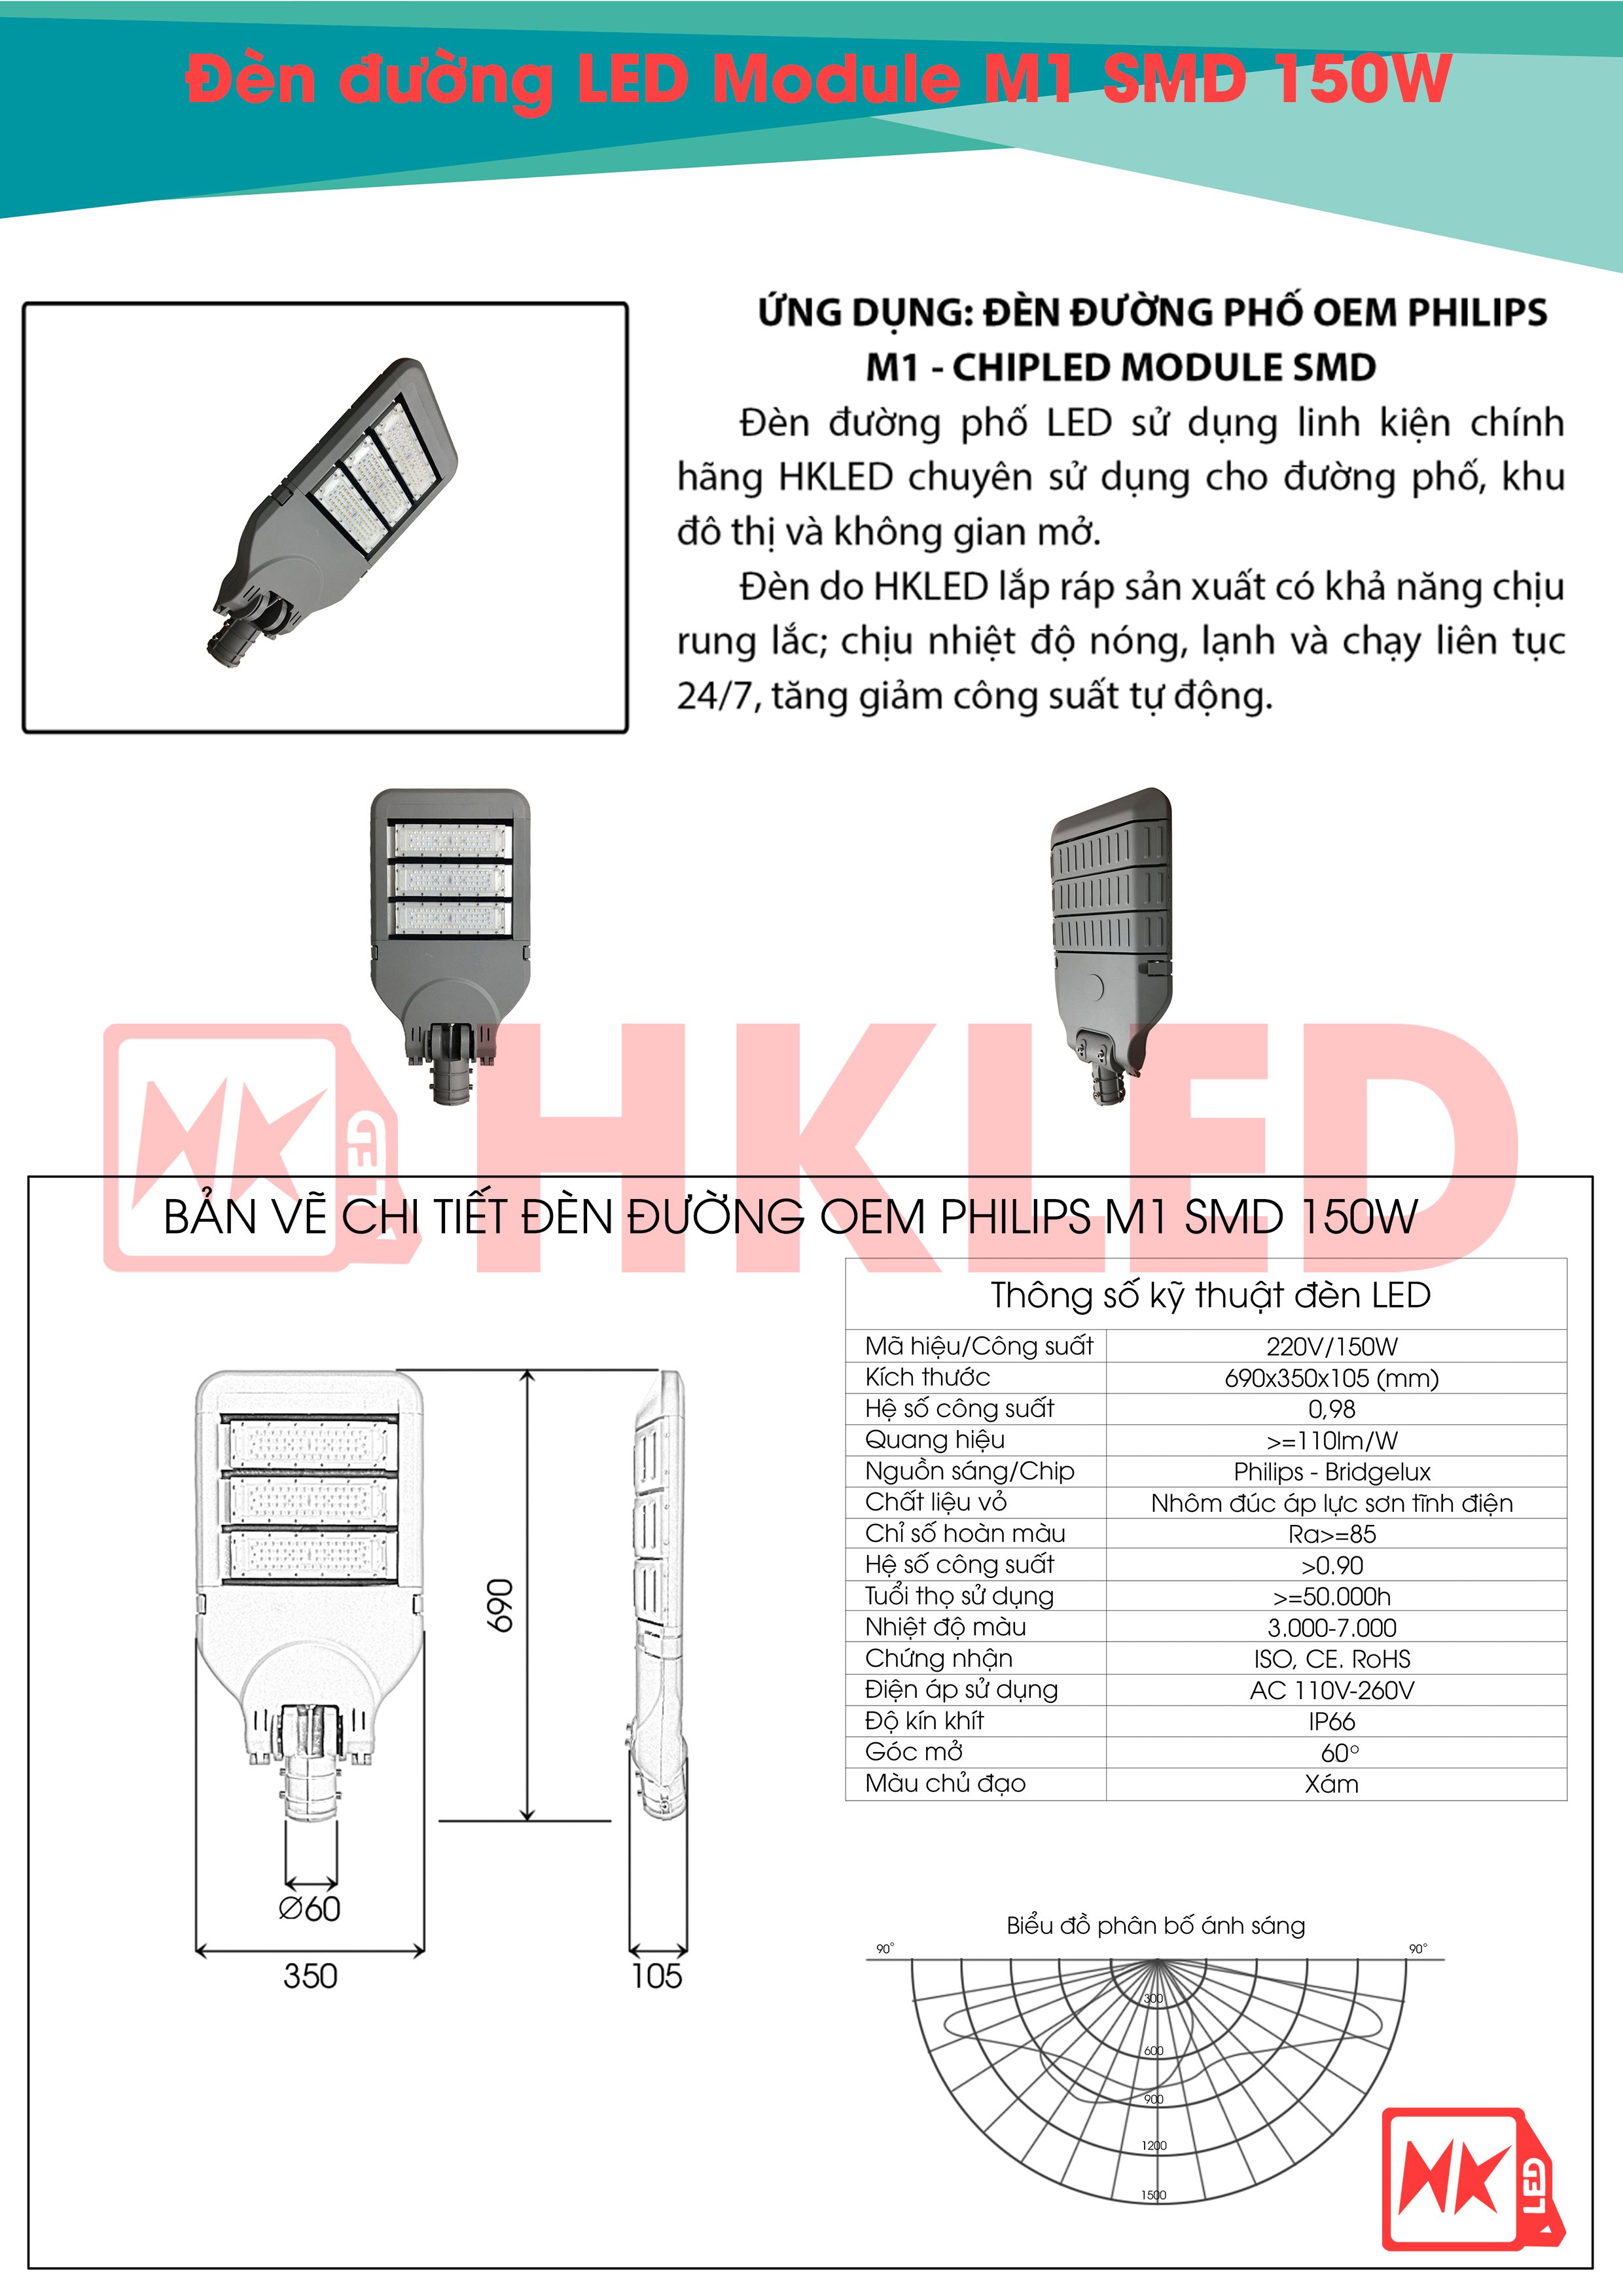 Ứng dụng, bản vẽ chi tiết và thông số kỹ thuật đèn đường LED OEM Philips M1 Module SMD 150W